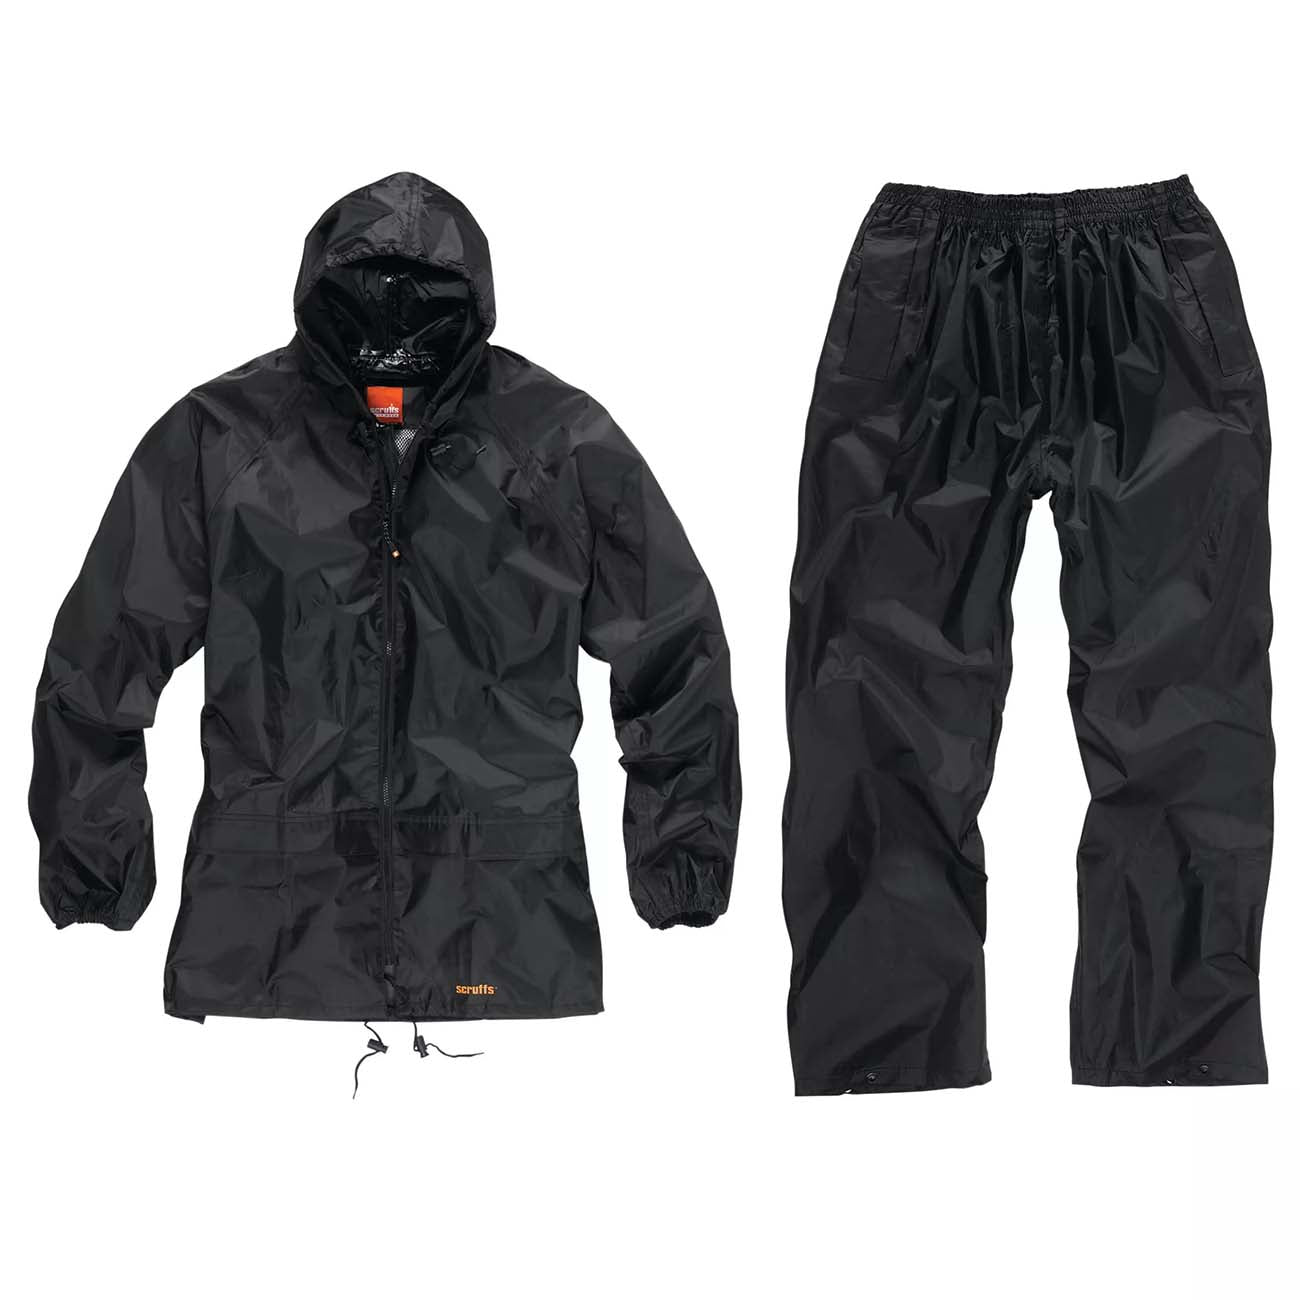 Scruffs Waterproof Suit Black